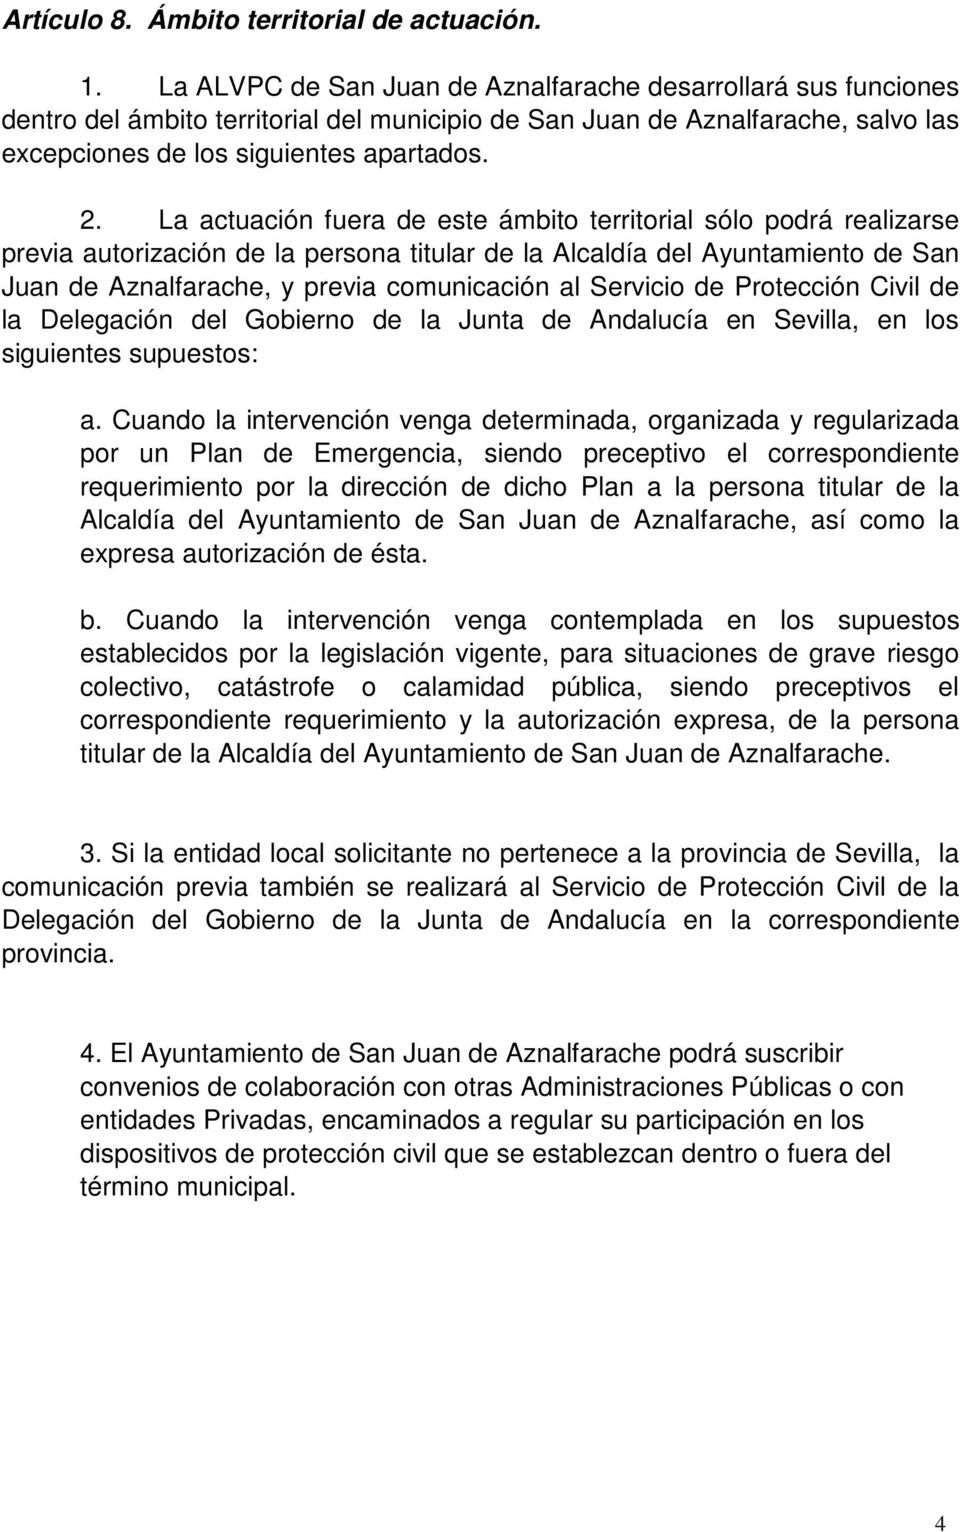 La actuación fuera de este ámbito territorial sólo podrá realizarse previa autorización de la persona titular de la Alcaldía del Ayuntamiento de San Juan de Aznalfarache, y previa comunicación al